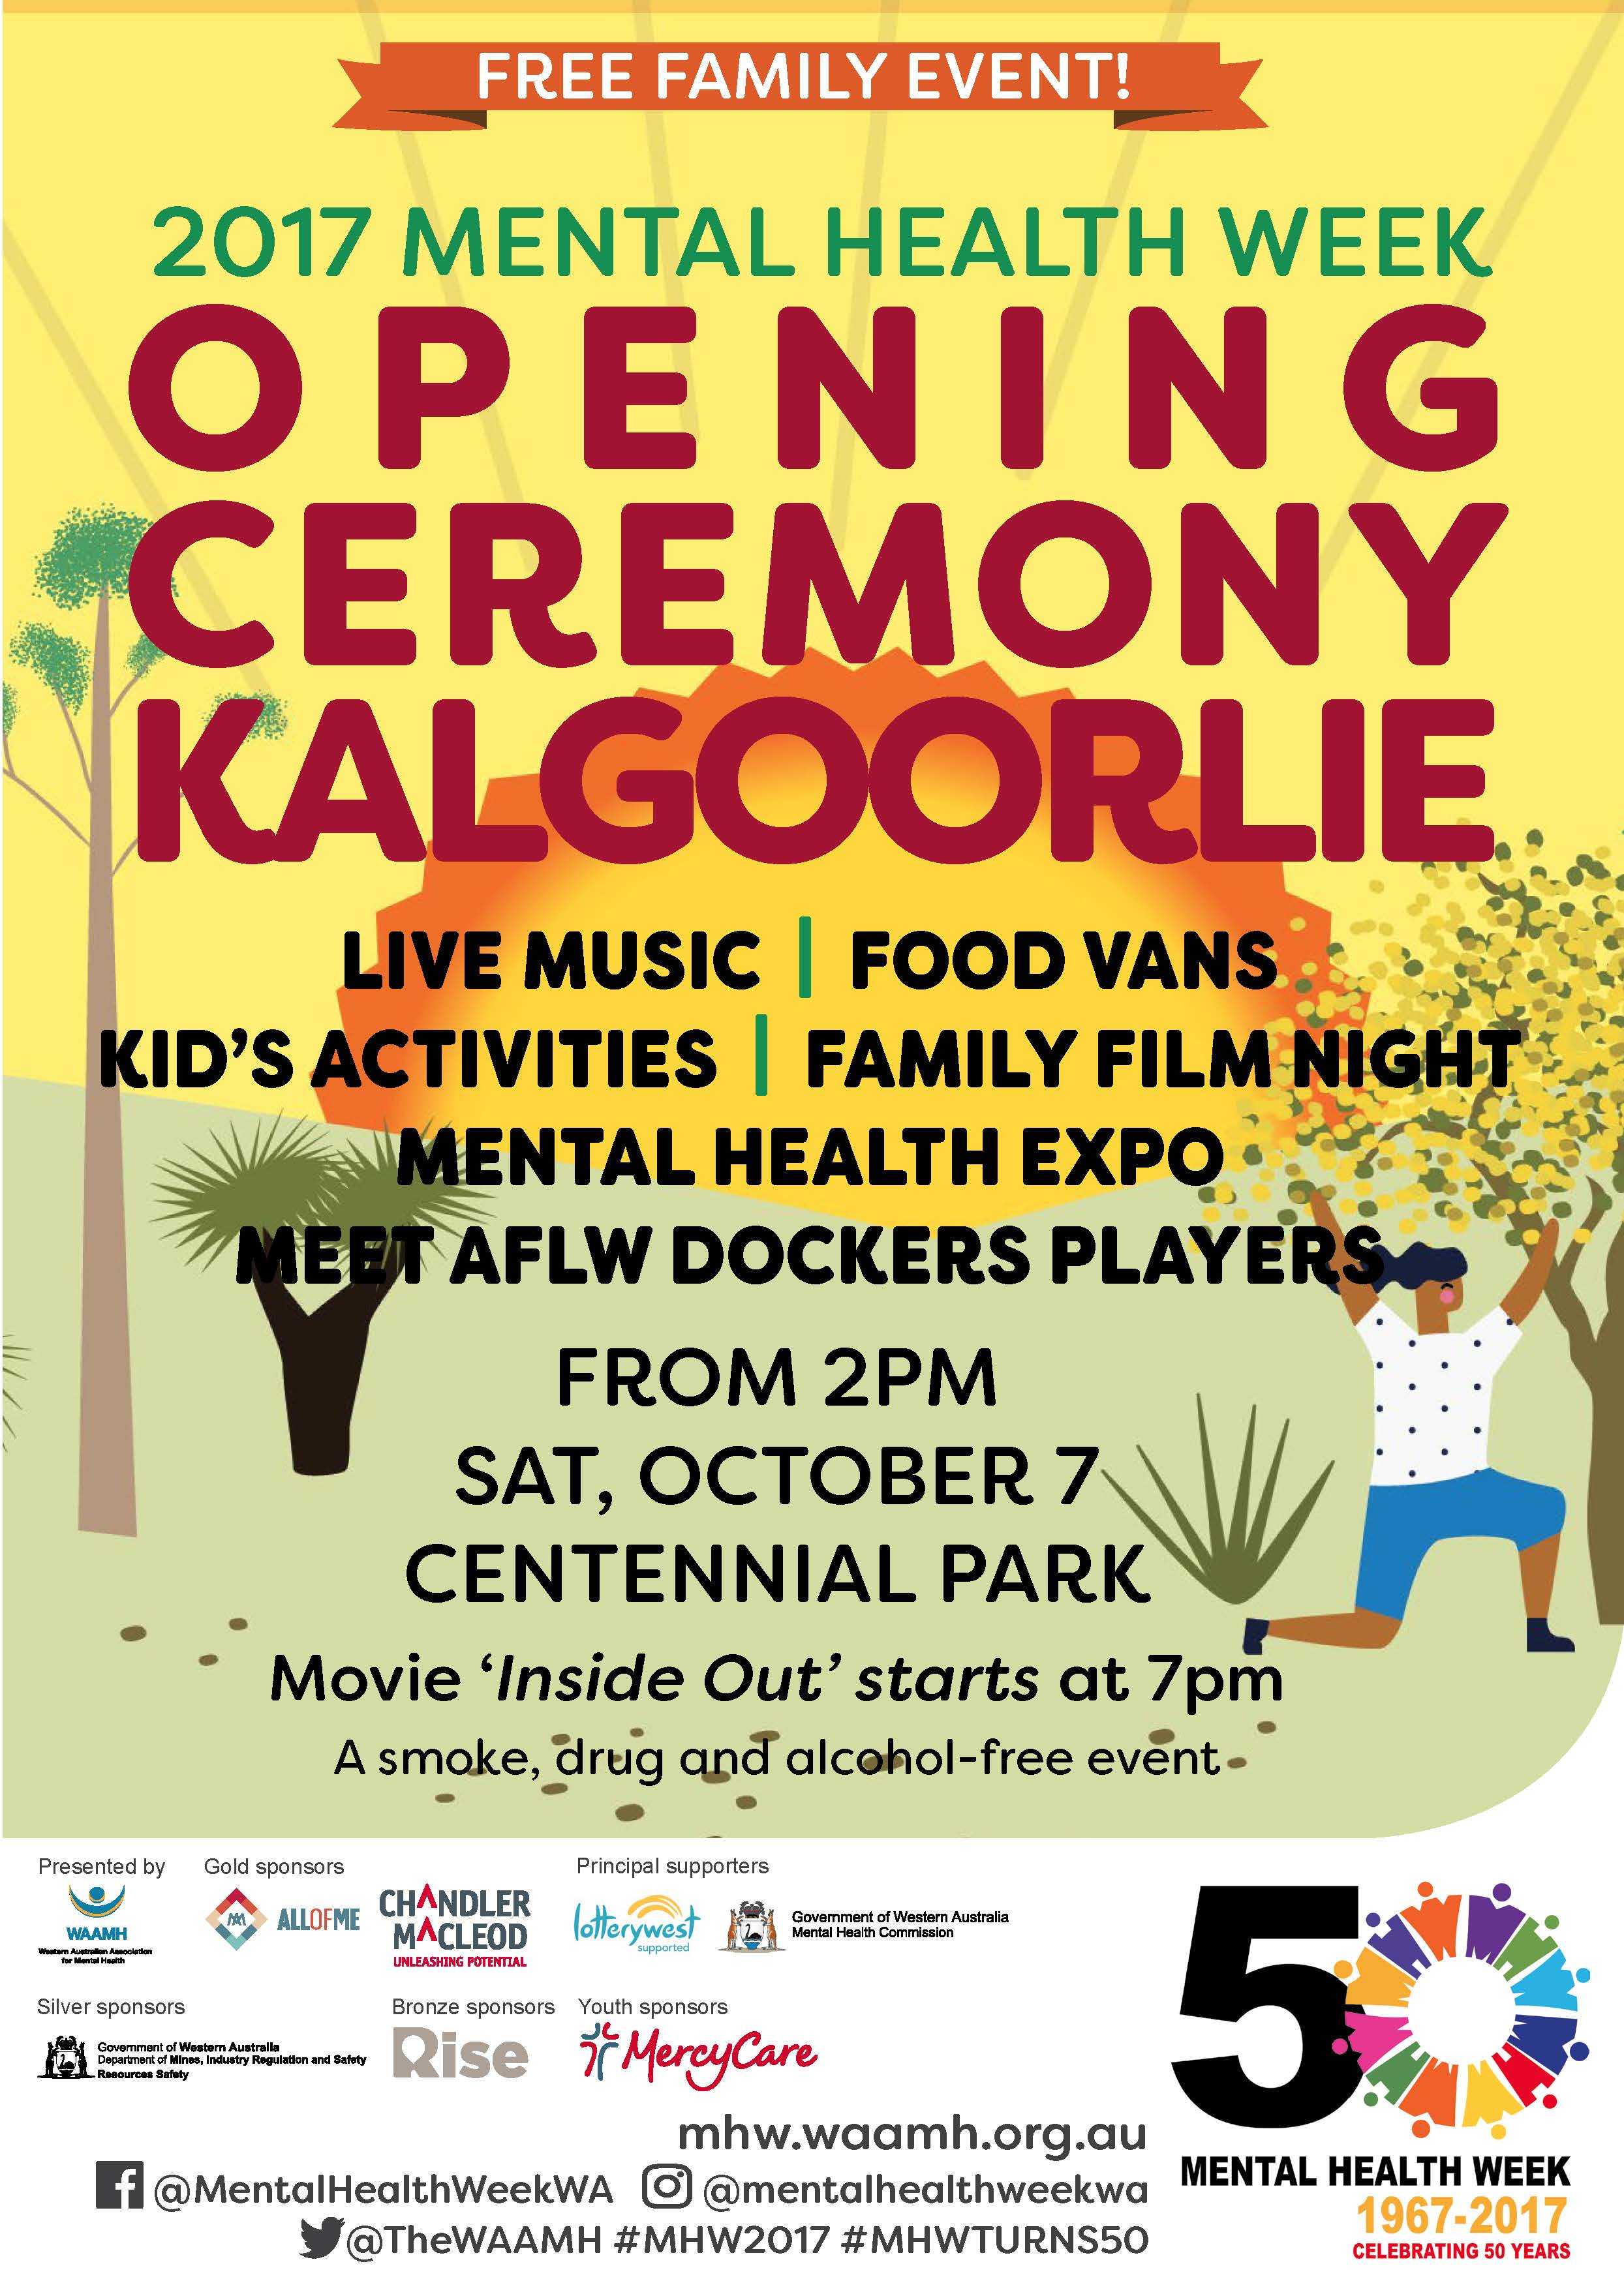 Opening Ceremony Mental Health Week 2017 Kalgoorlie